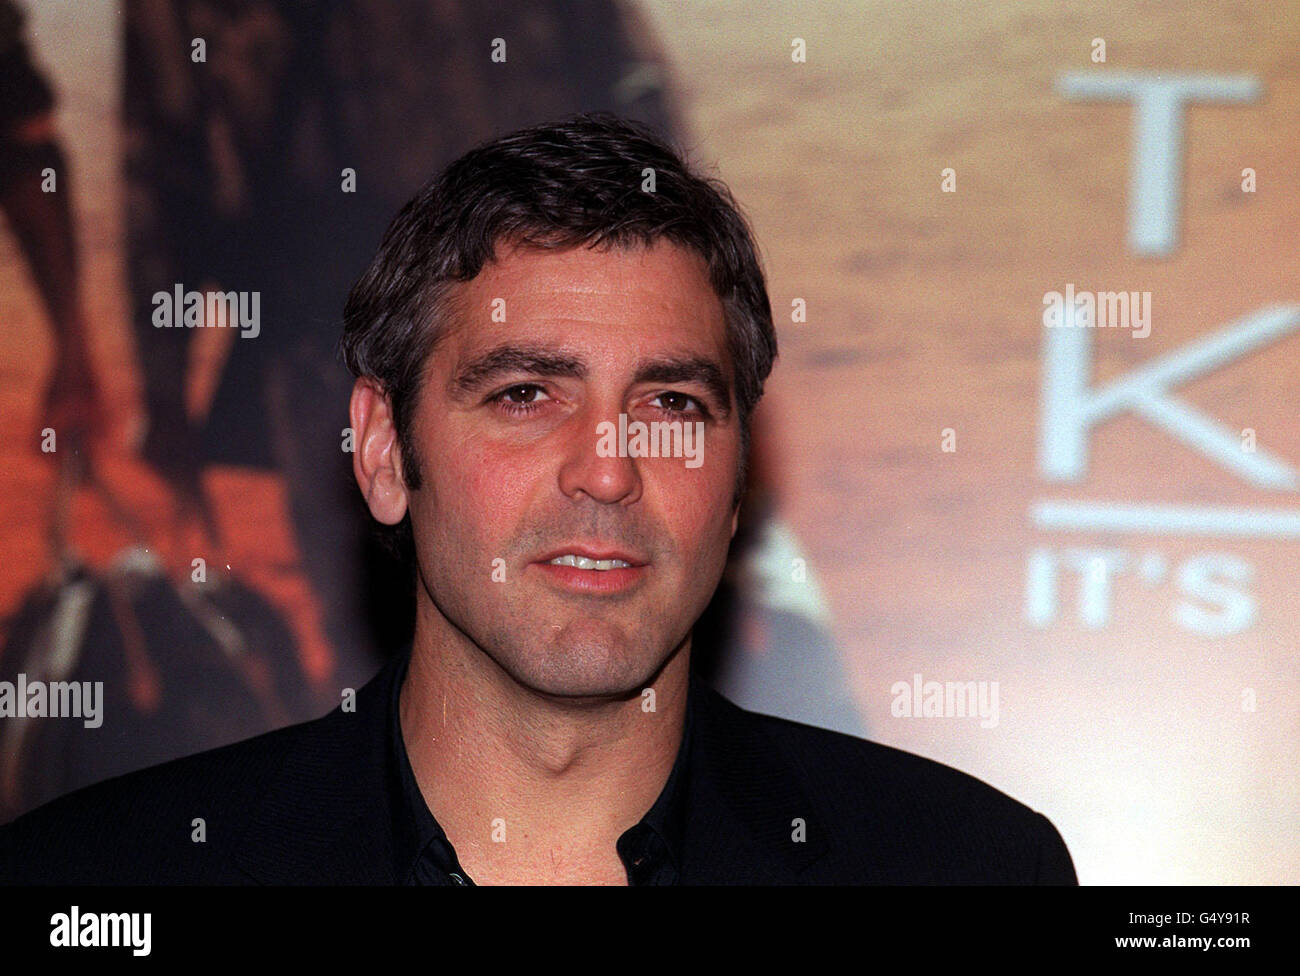 Schauspieler George Clooney posiert für die Medien vor einem Plakat für seinen neuen Film "Three Kings" in London. Stockfoto